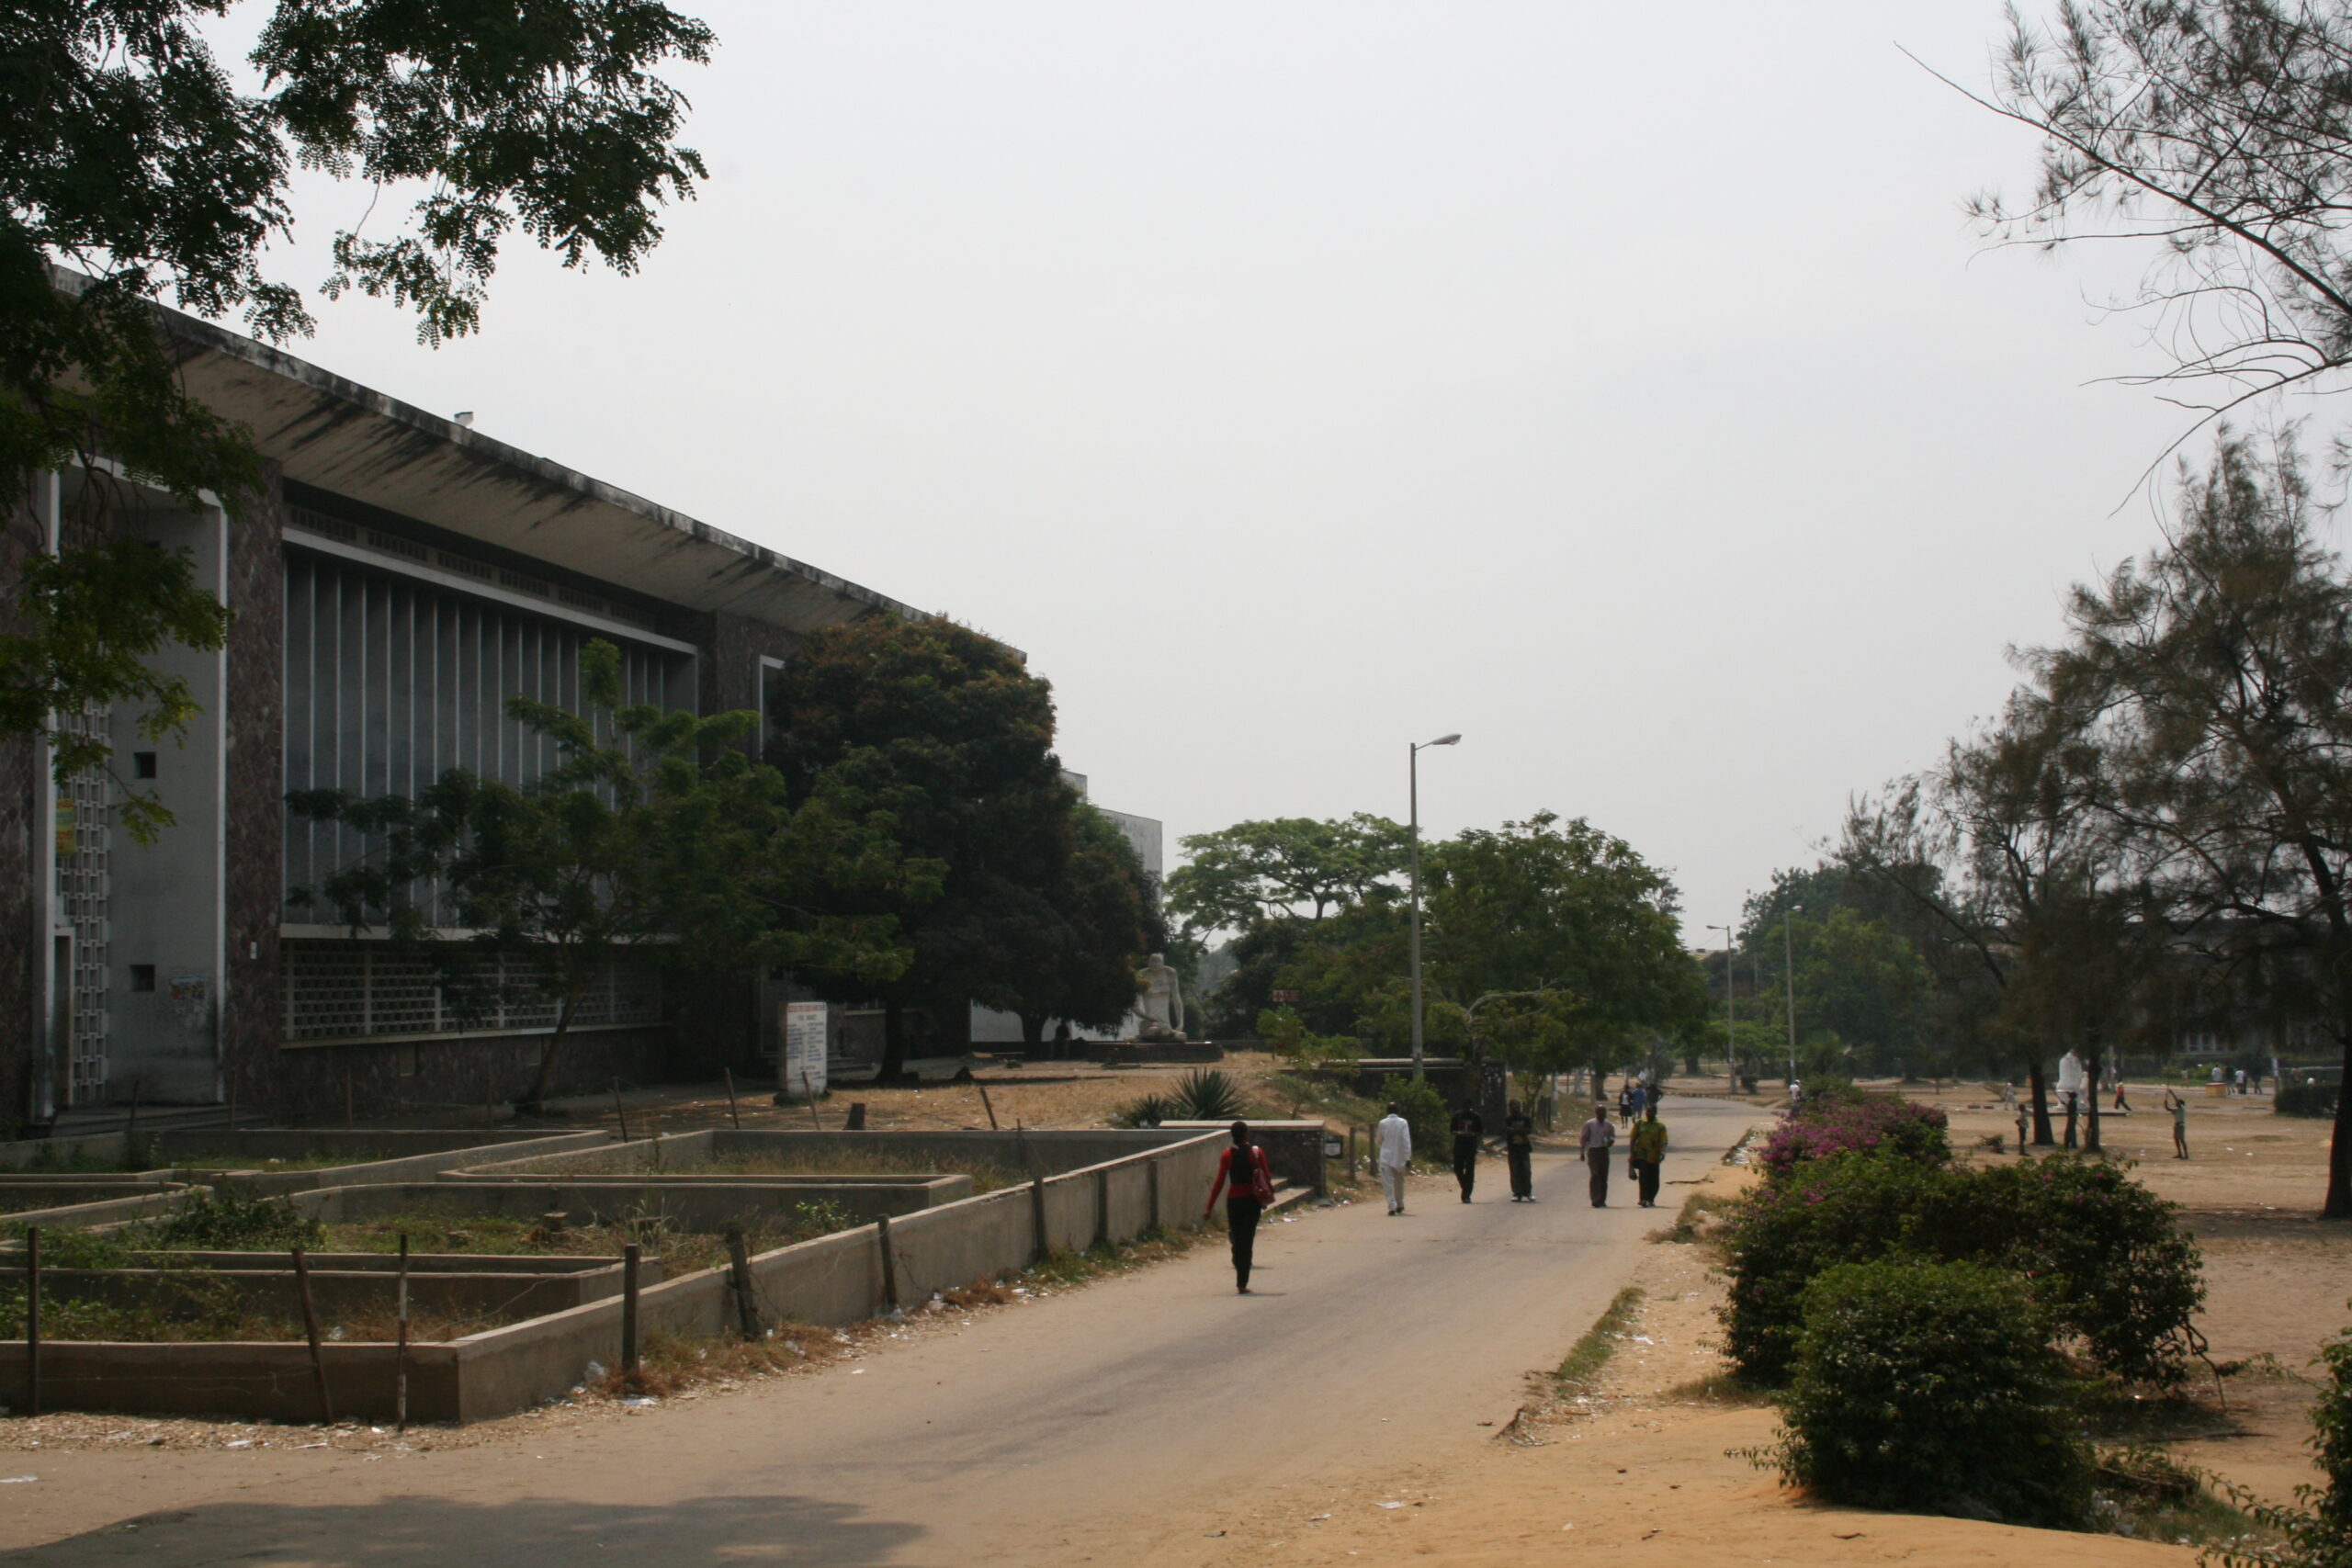 University of Kinshasa view